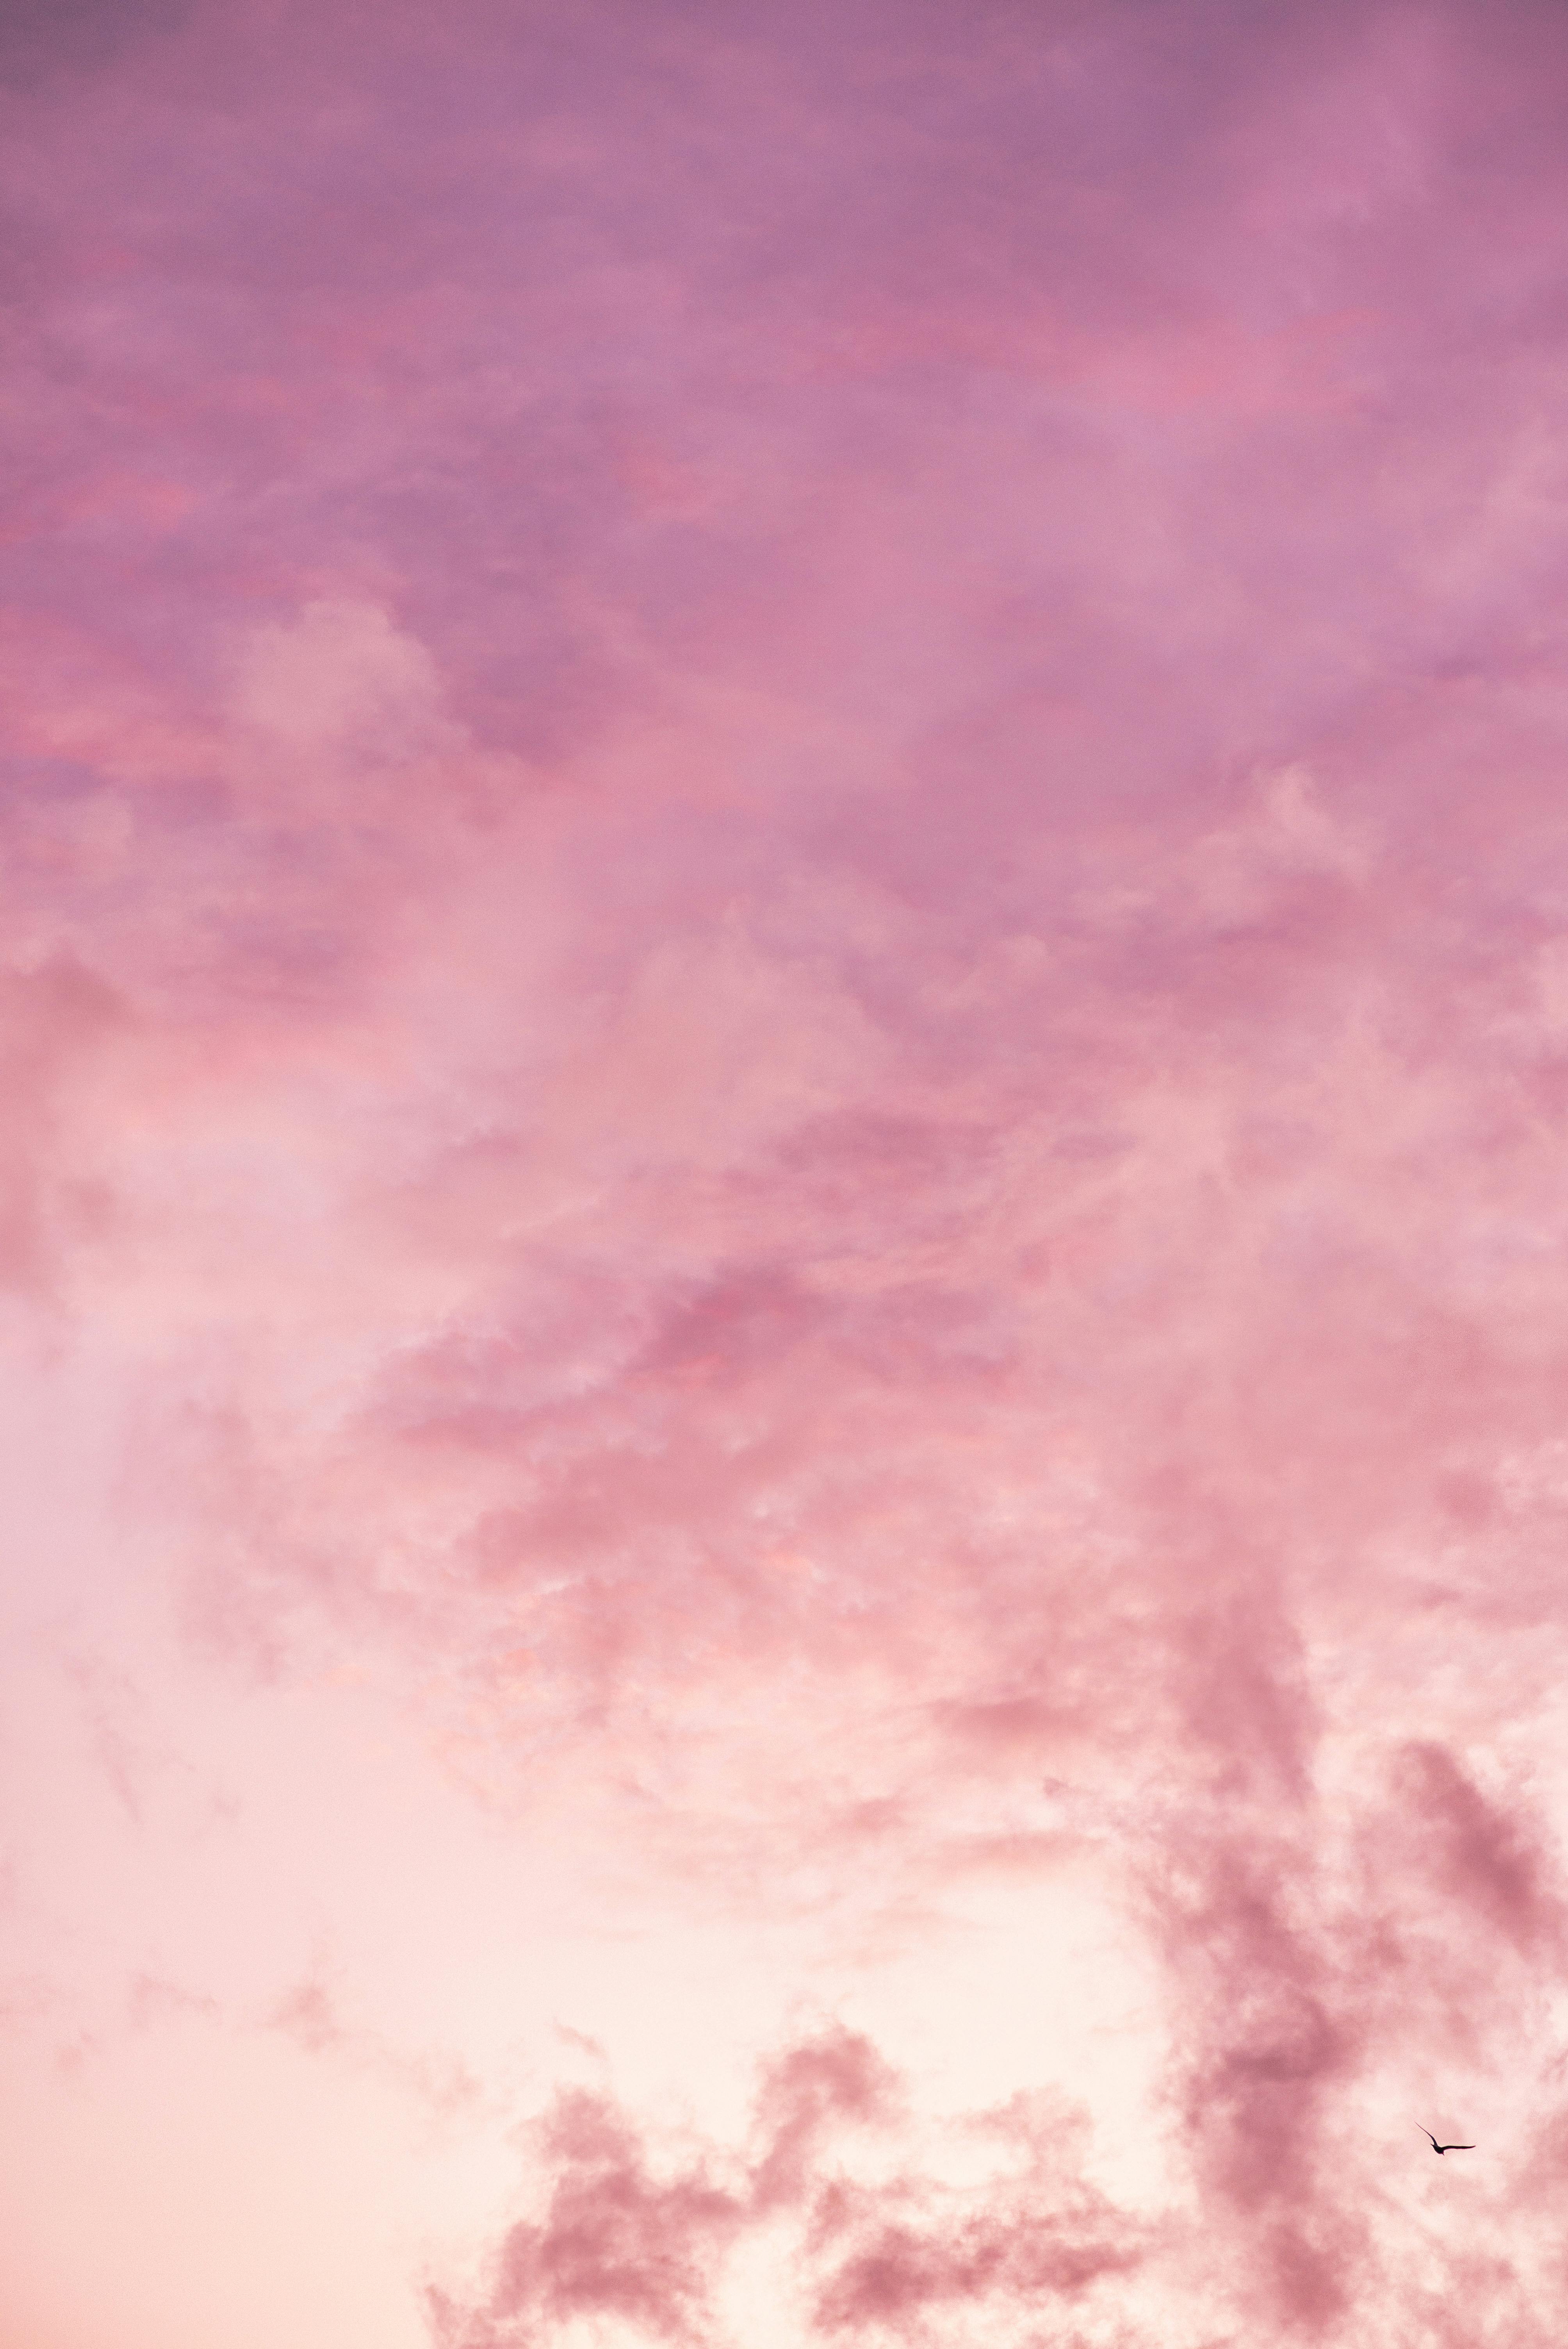 Không chỉ đẹp mà còn miễn phí! Hãy chuẩn bị cho bản thân những bức ảnh tuyệt đẹp về đám mây hồng này, giúp cho bức tranh thiên nhiên của bạn trở nên sống động và vô cùng đáng yêu.